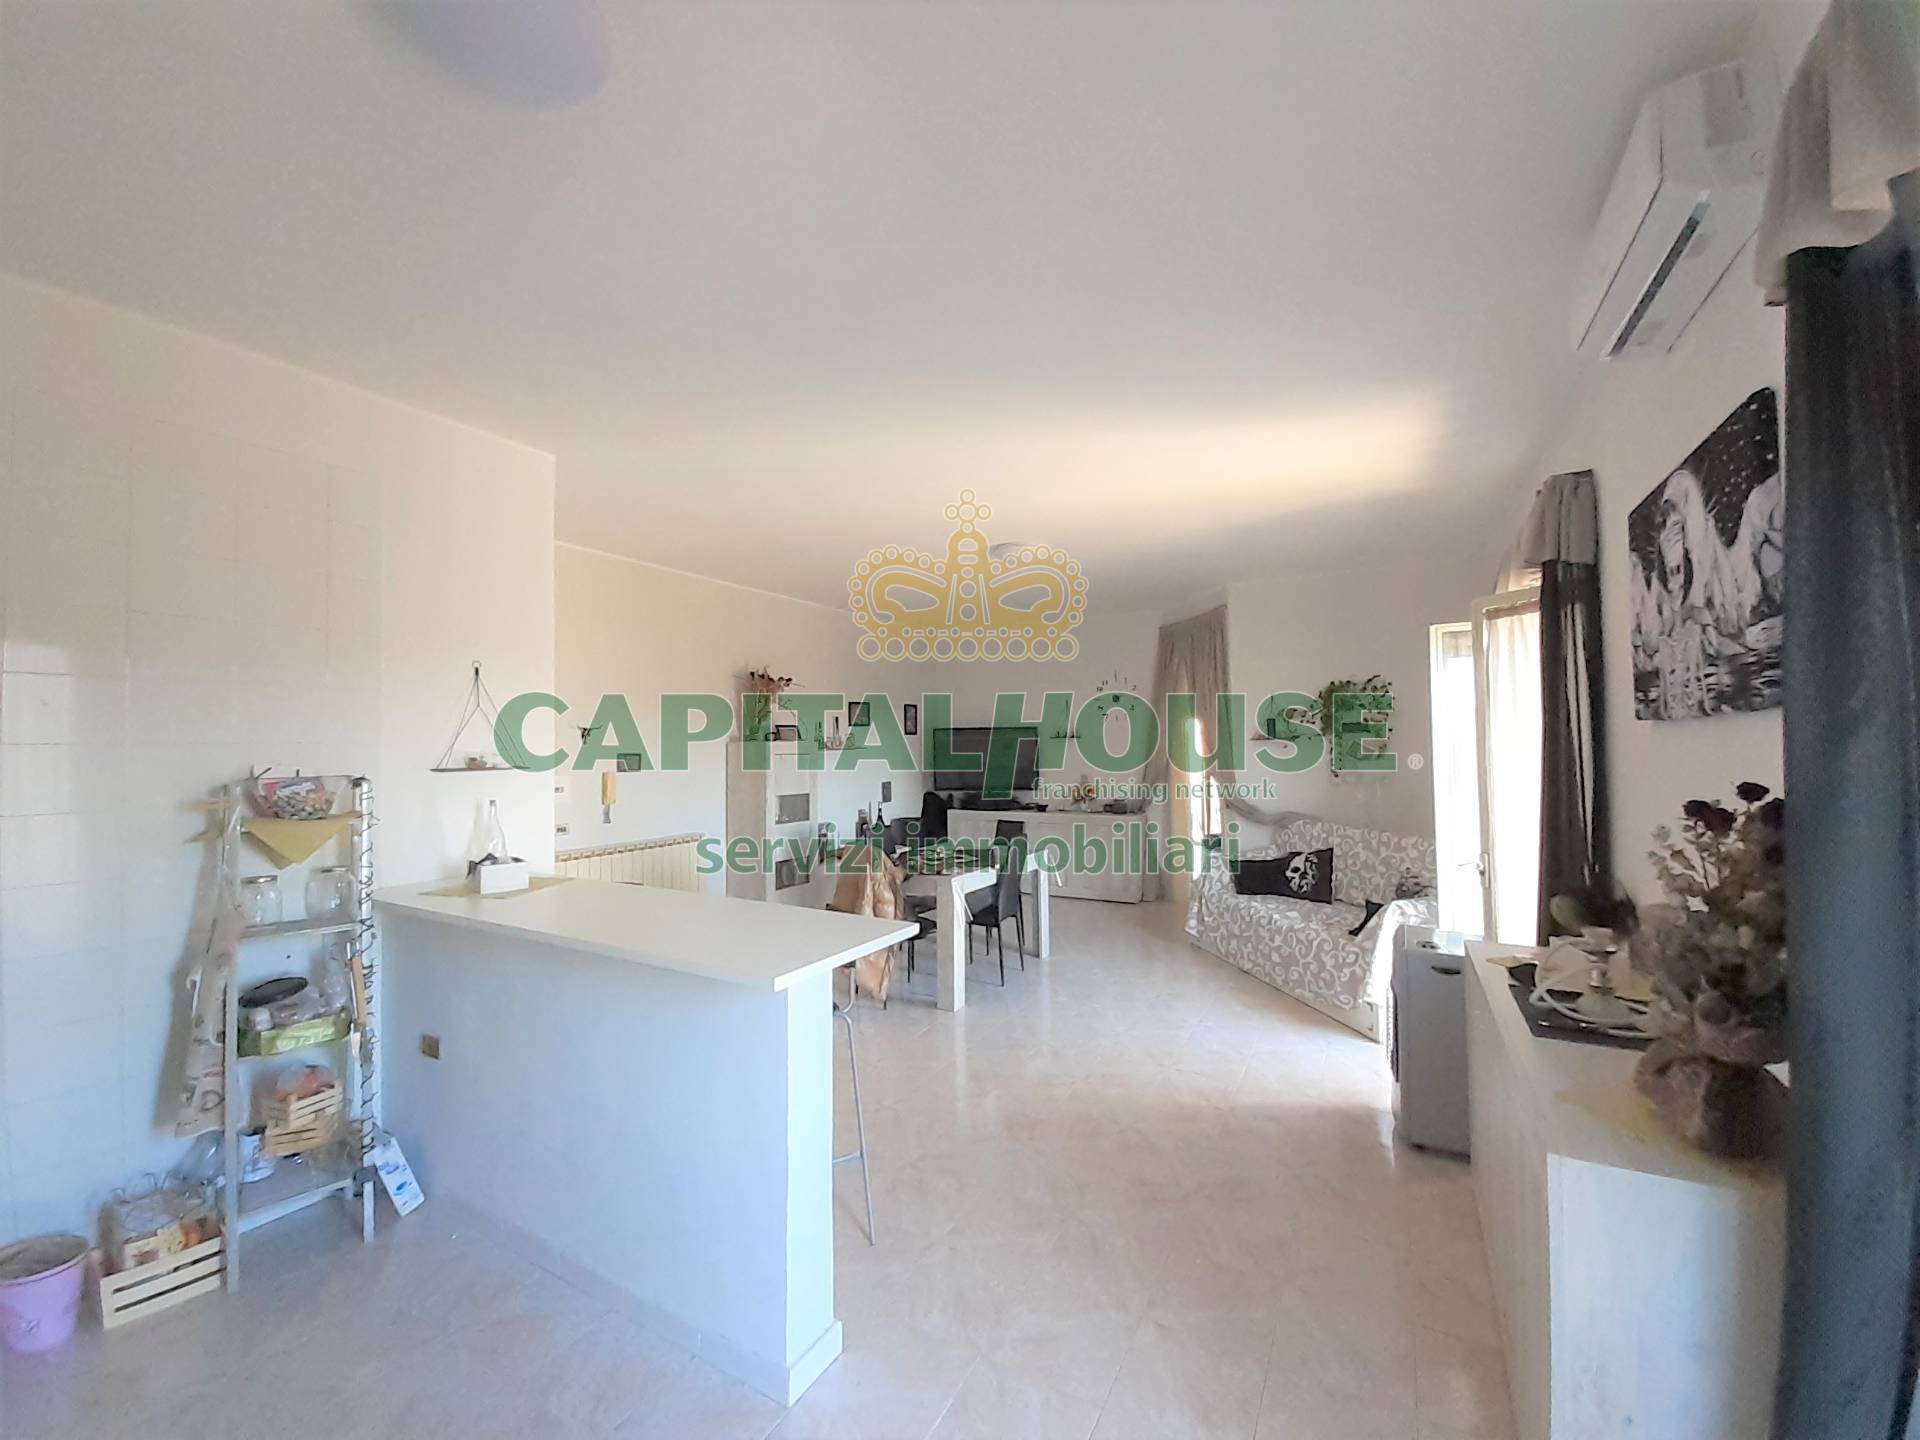 Appartamento in vendita a Macerata Campania, 3 locali, prezzo € 70.000 | PortaleAgenzieImmobiliari.it